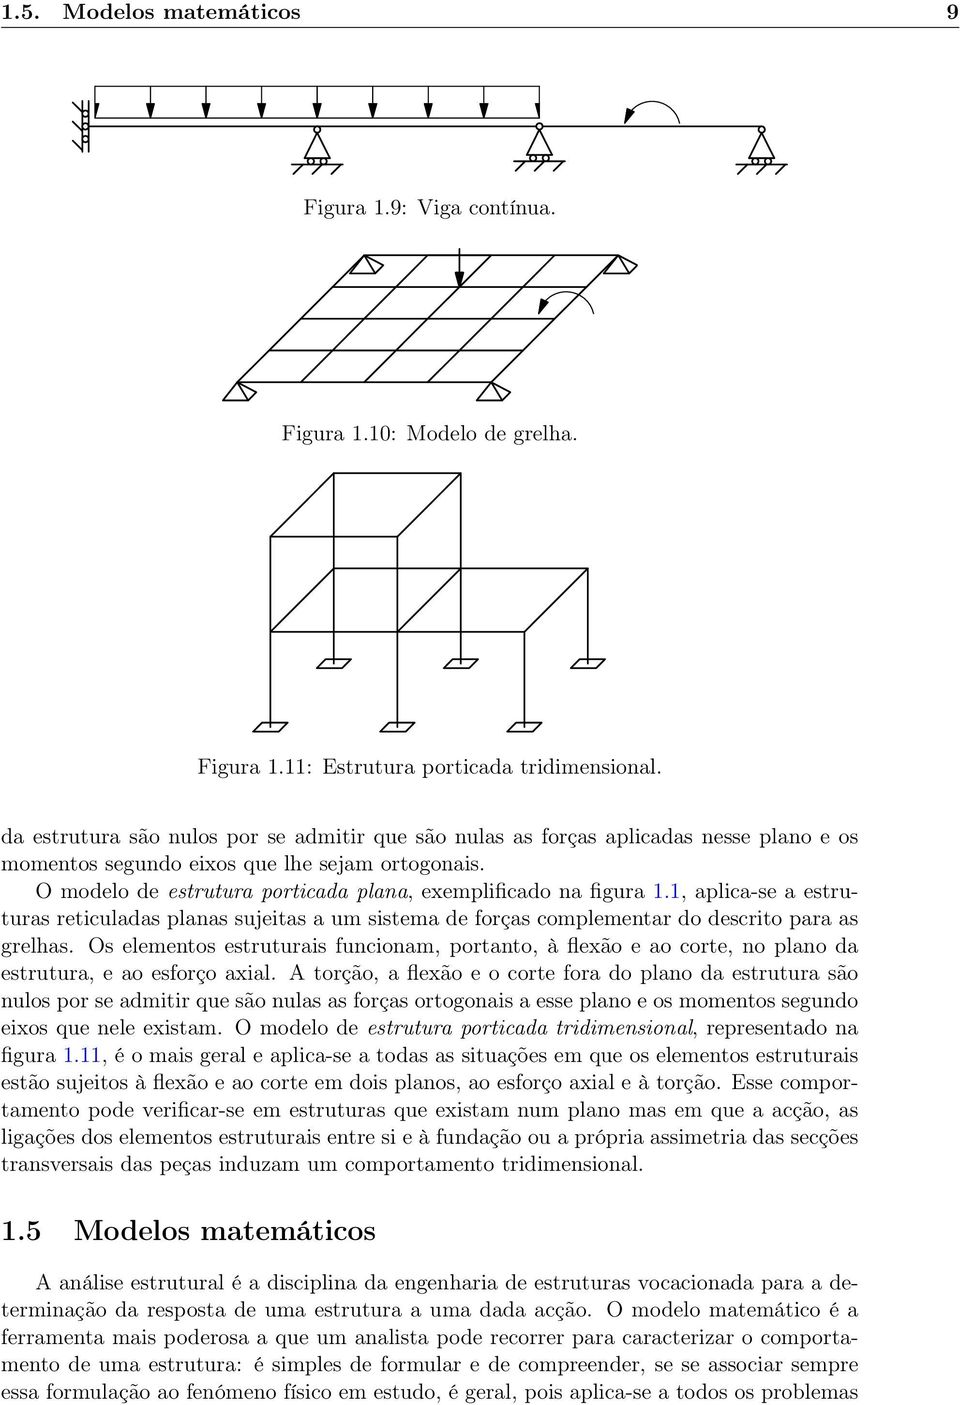 O modelo de estrutura porticada plana, exemplificado na figura 1.1, aplica-se a estruturas reticuladas planas sujeitas a um sistema de forças complementar do descrito para as grelhas.